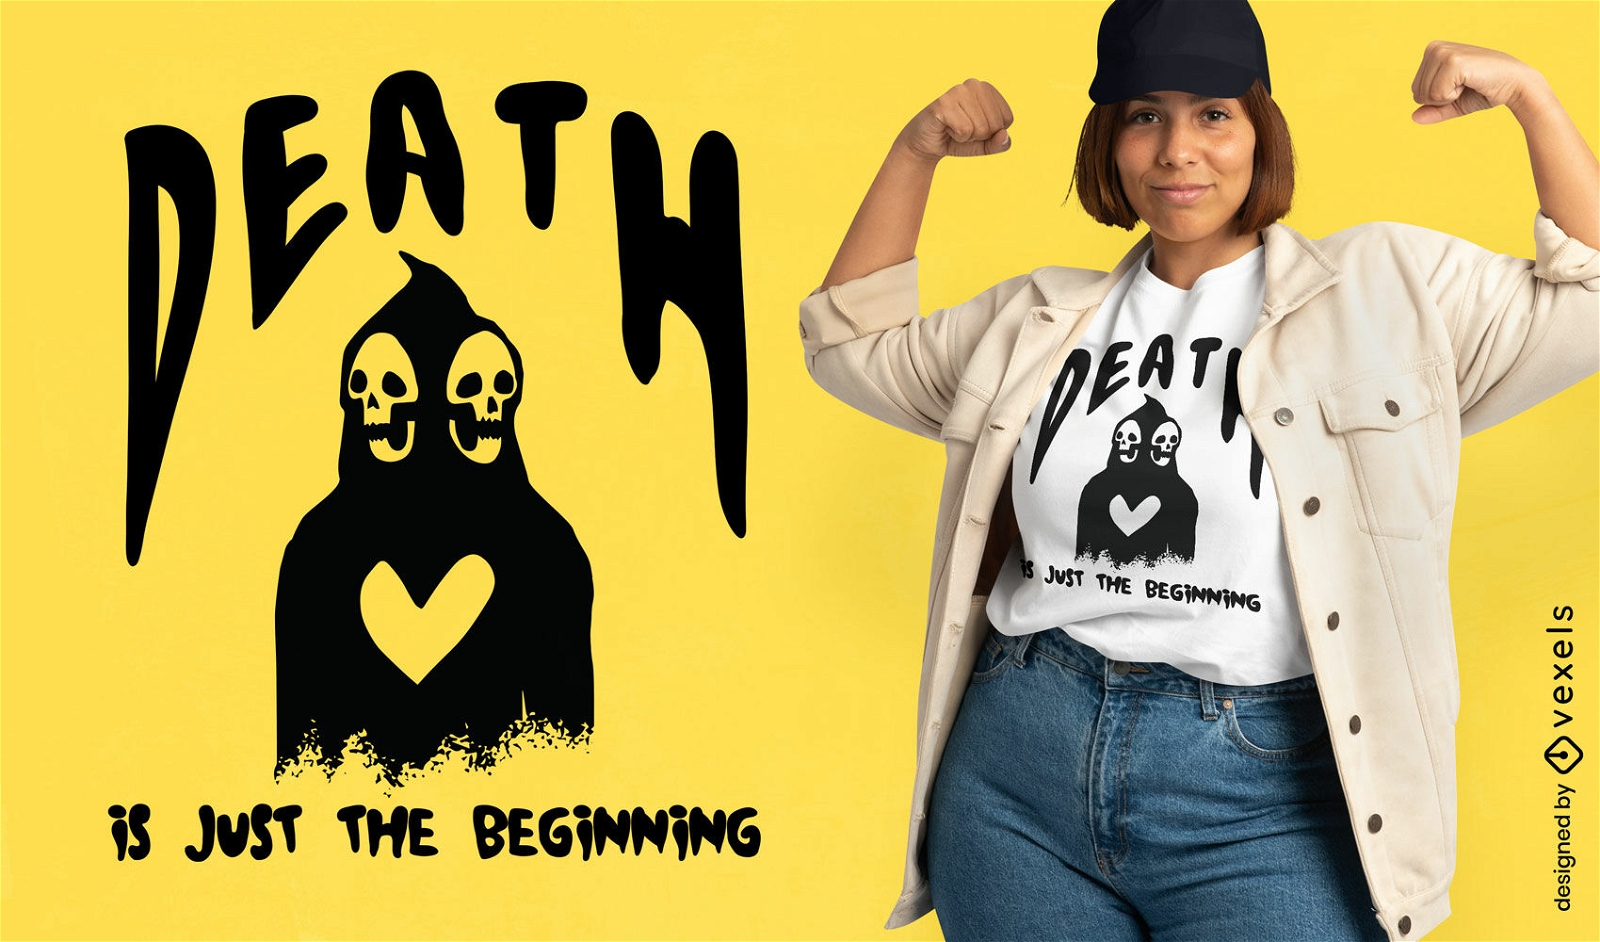 Der Tod ist nur der Anfang des T-Shirt-Designs